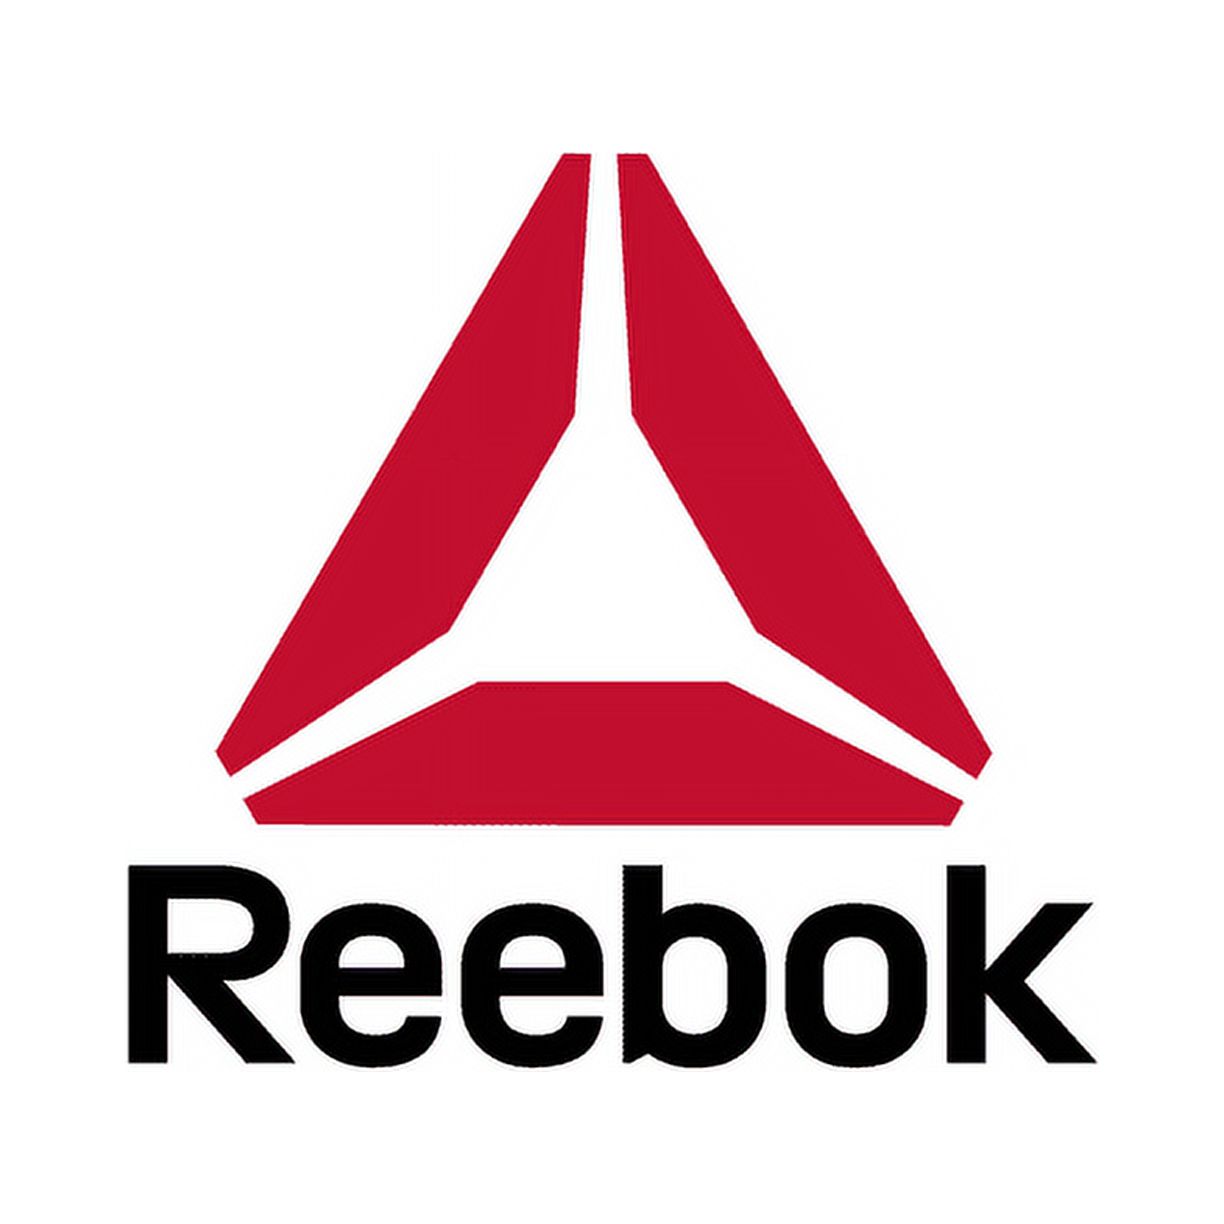 Reebok Girls Pros Series Ankle Socks, 6-Pack - image 5 of 9